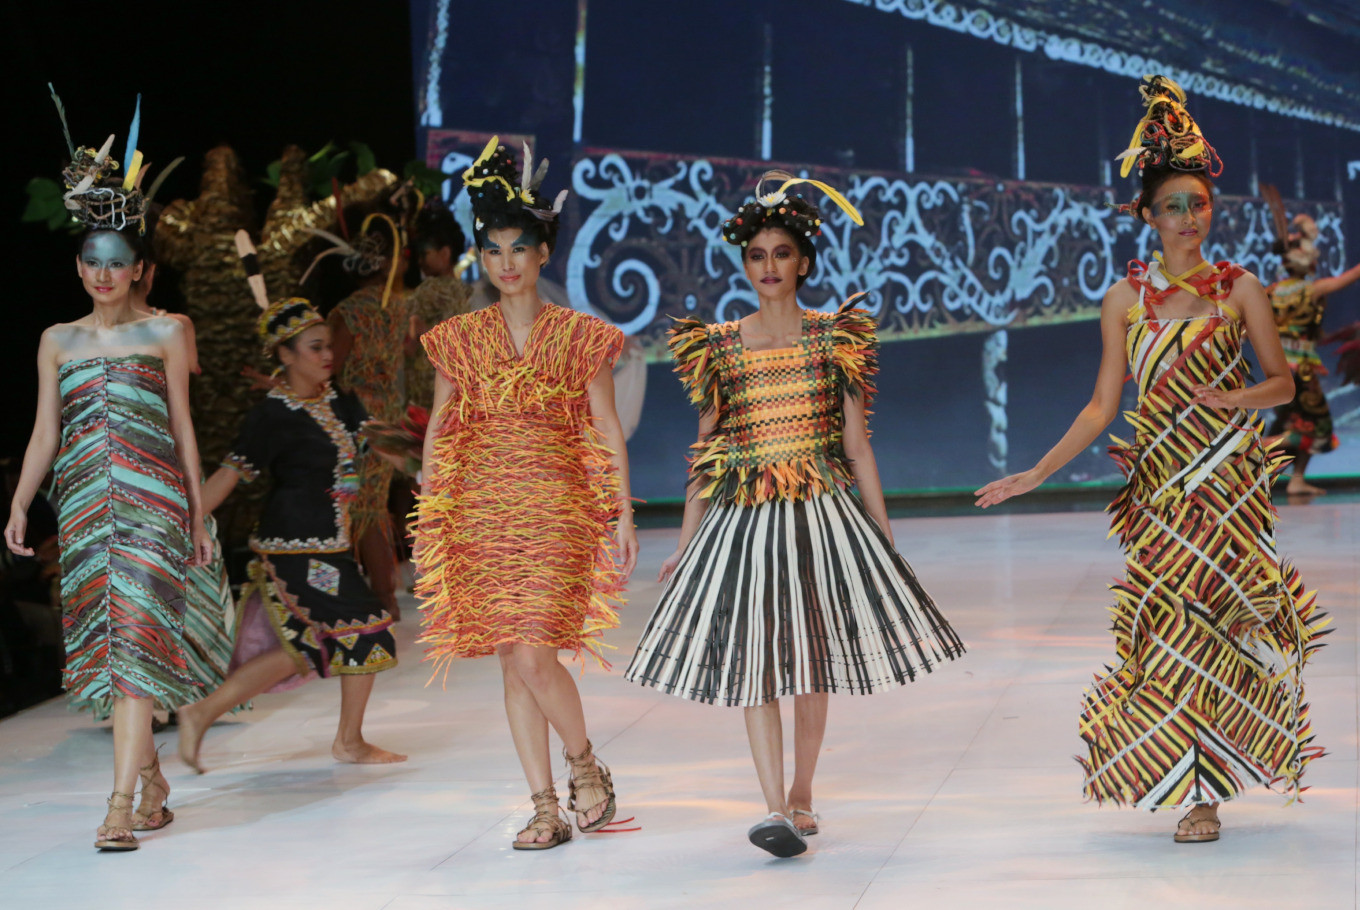  Model mengenakan kostum yang dirancang oleh Musa Widyatmodjo pada upacara pembukaan Indonesia Fashion Week 2019 di Jakarta Convention Center di Jakarta Pusat pada hari Rabu